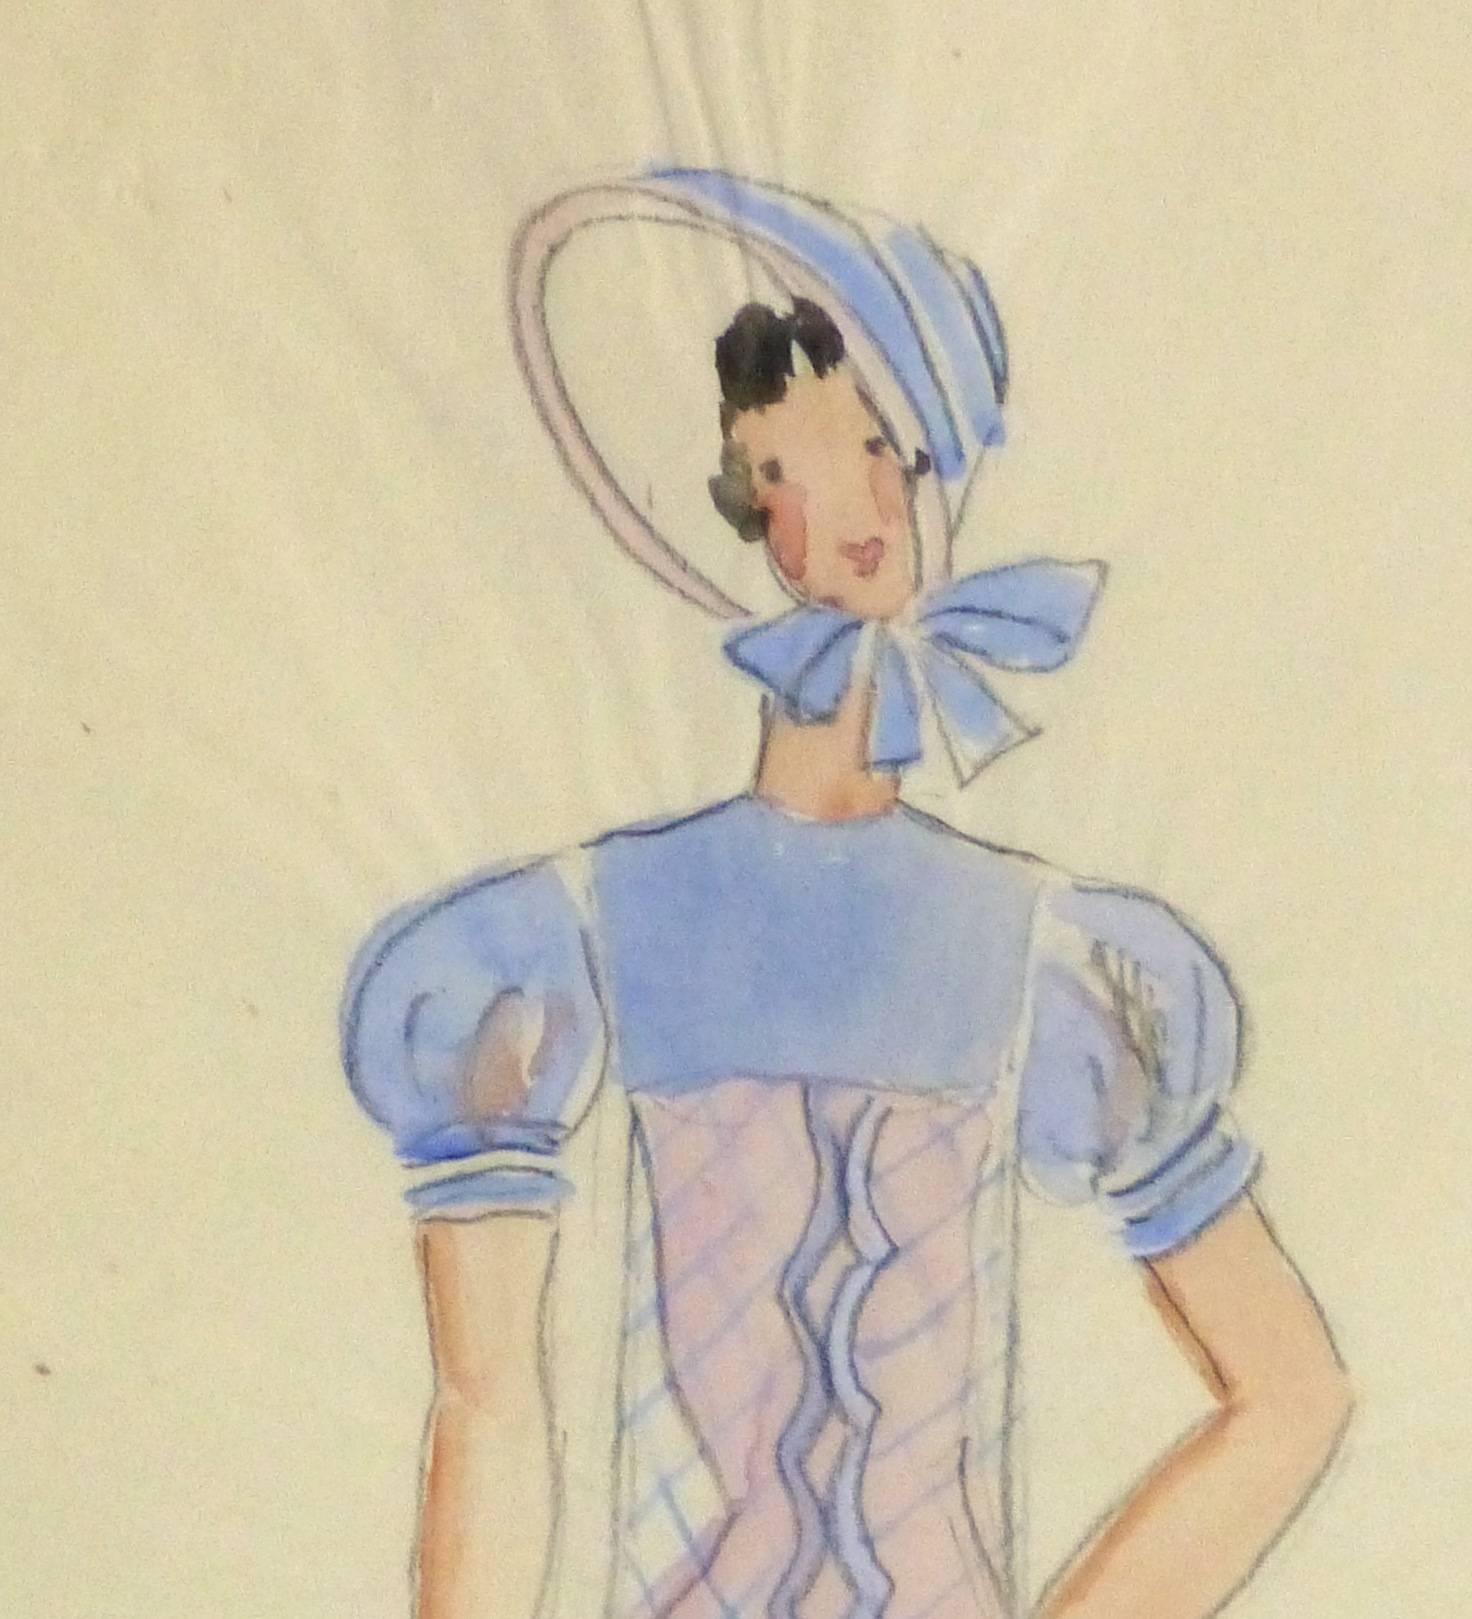 Vieille croquise de théâtre parisienne - Belle robe de bonnet - Art de Unknown